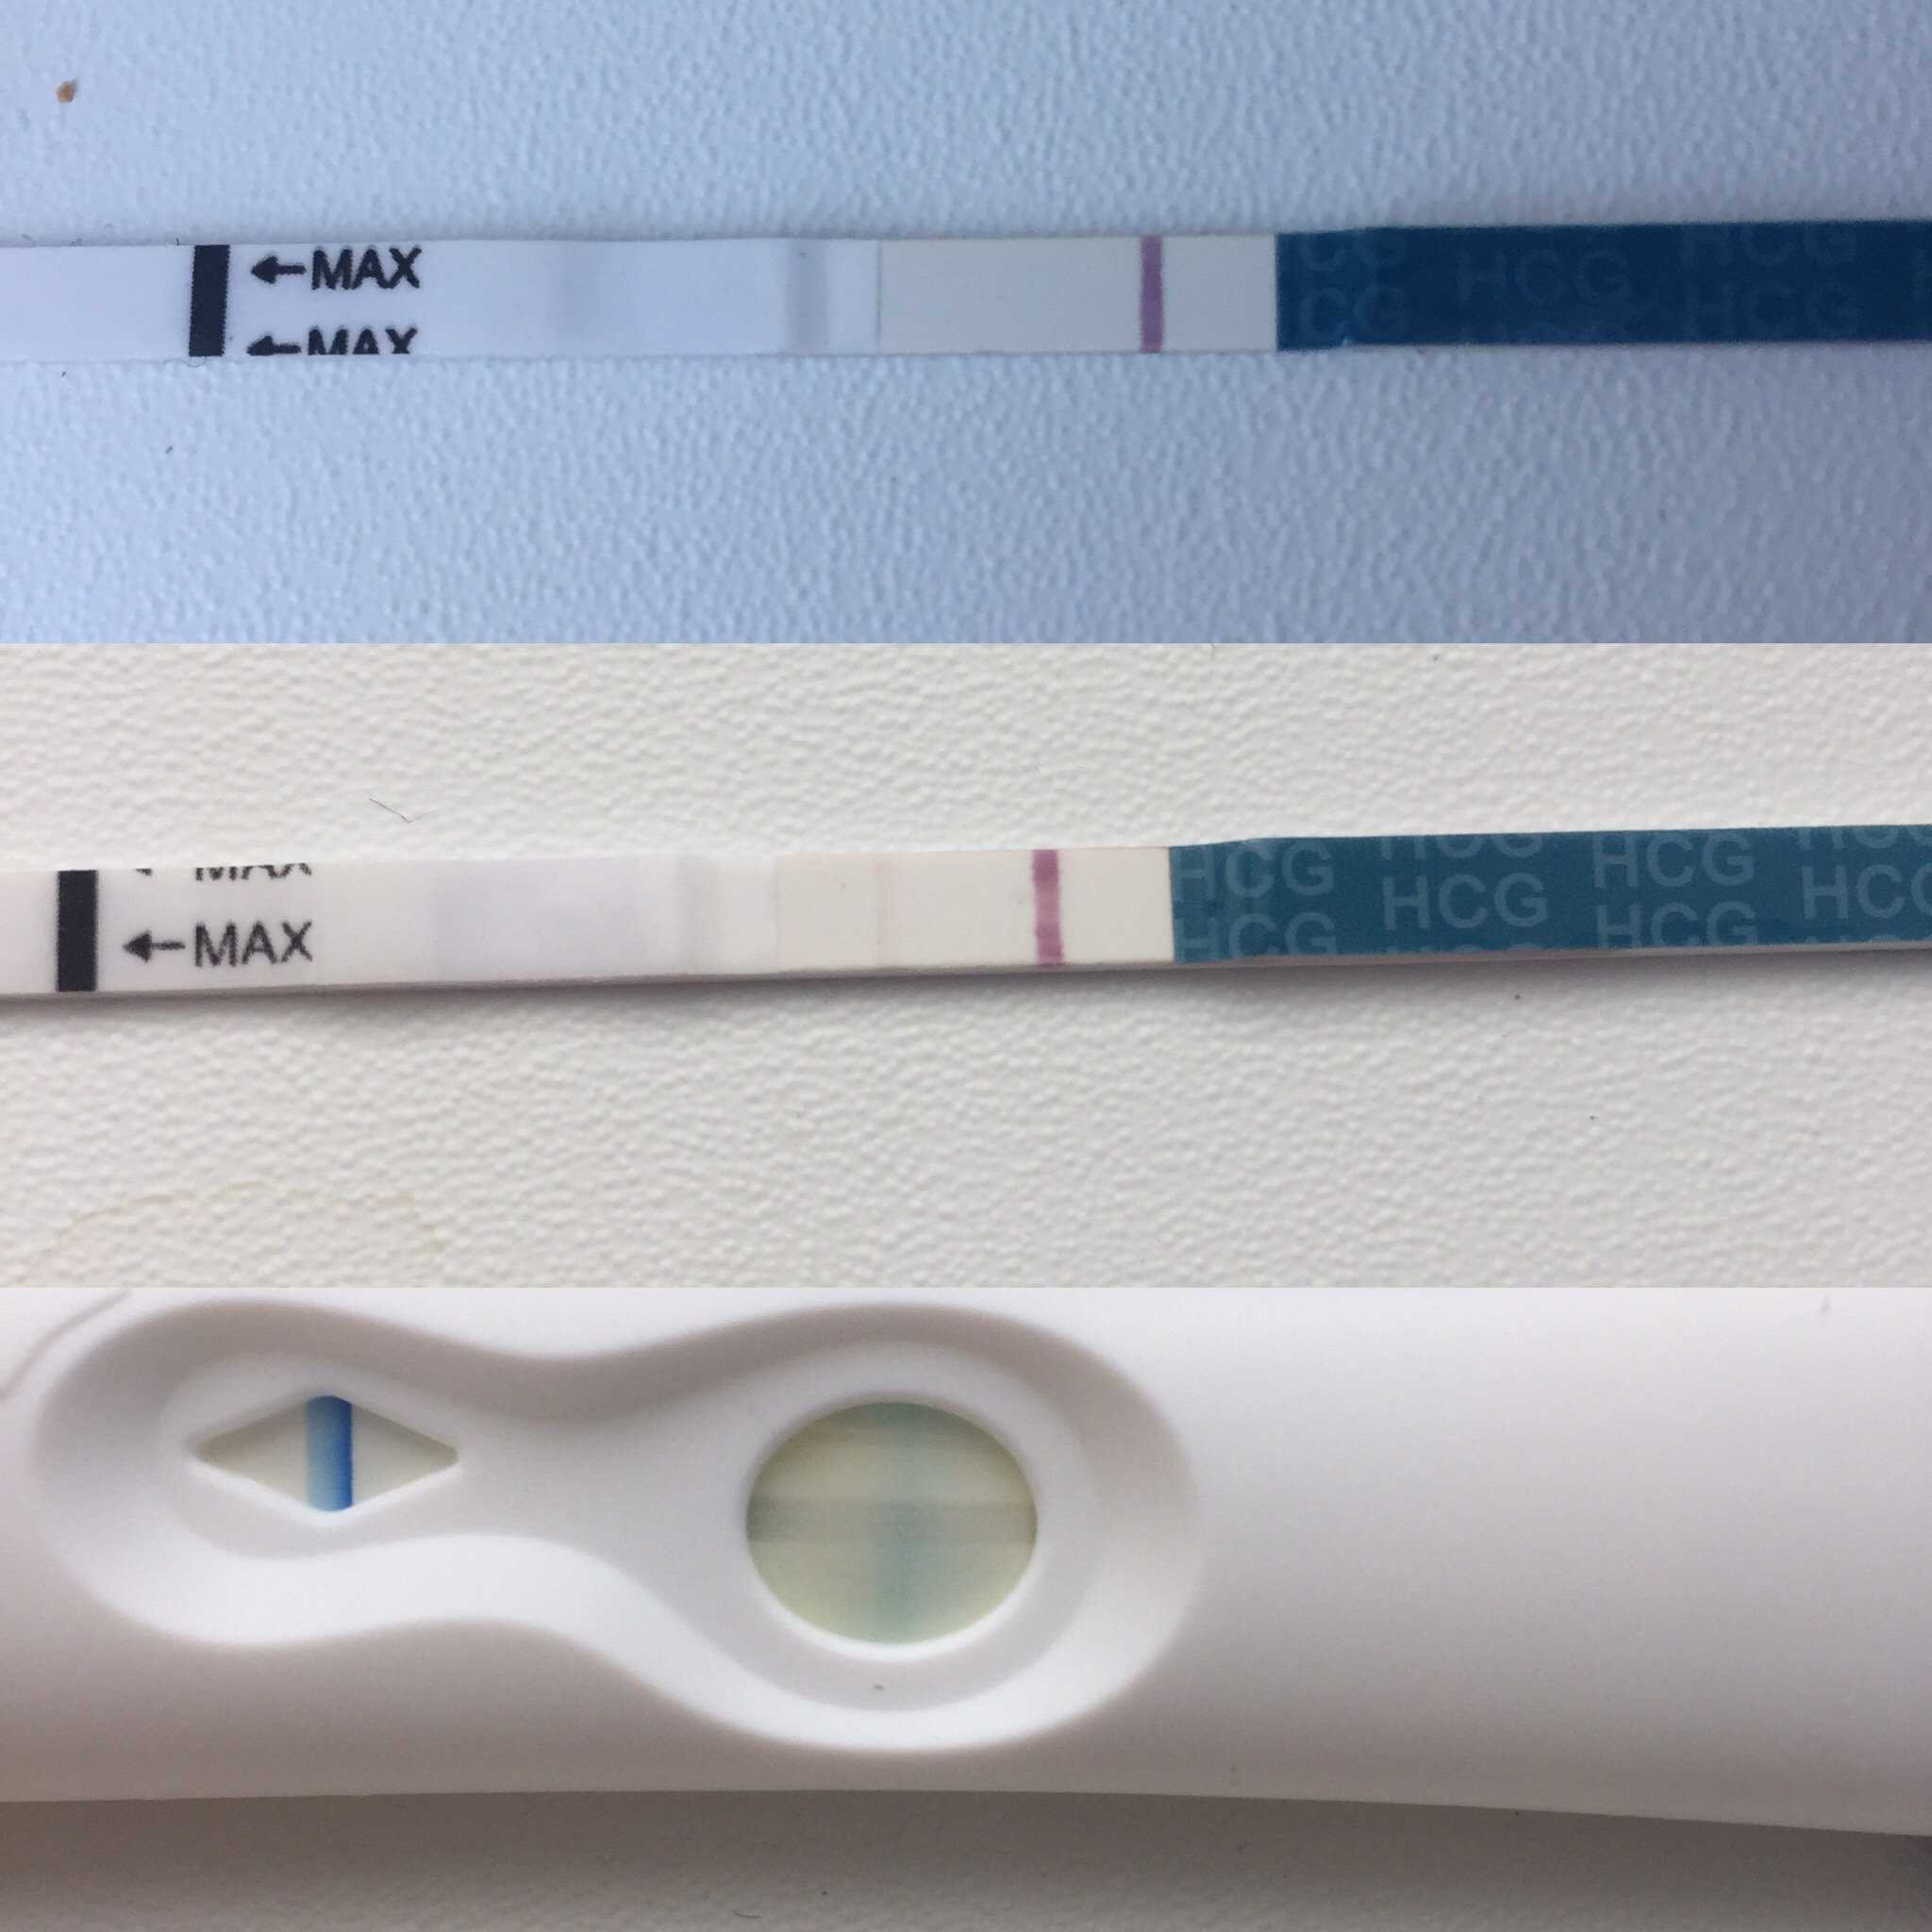 Тонкая полоска на тесте. Тест на беременность эвитест слабая вторая полоска. Эвитест 2 полоска бледнее. Контрольная полоска бледнее тестовой Evitest. Беременность вторая полоска бледная.